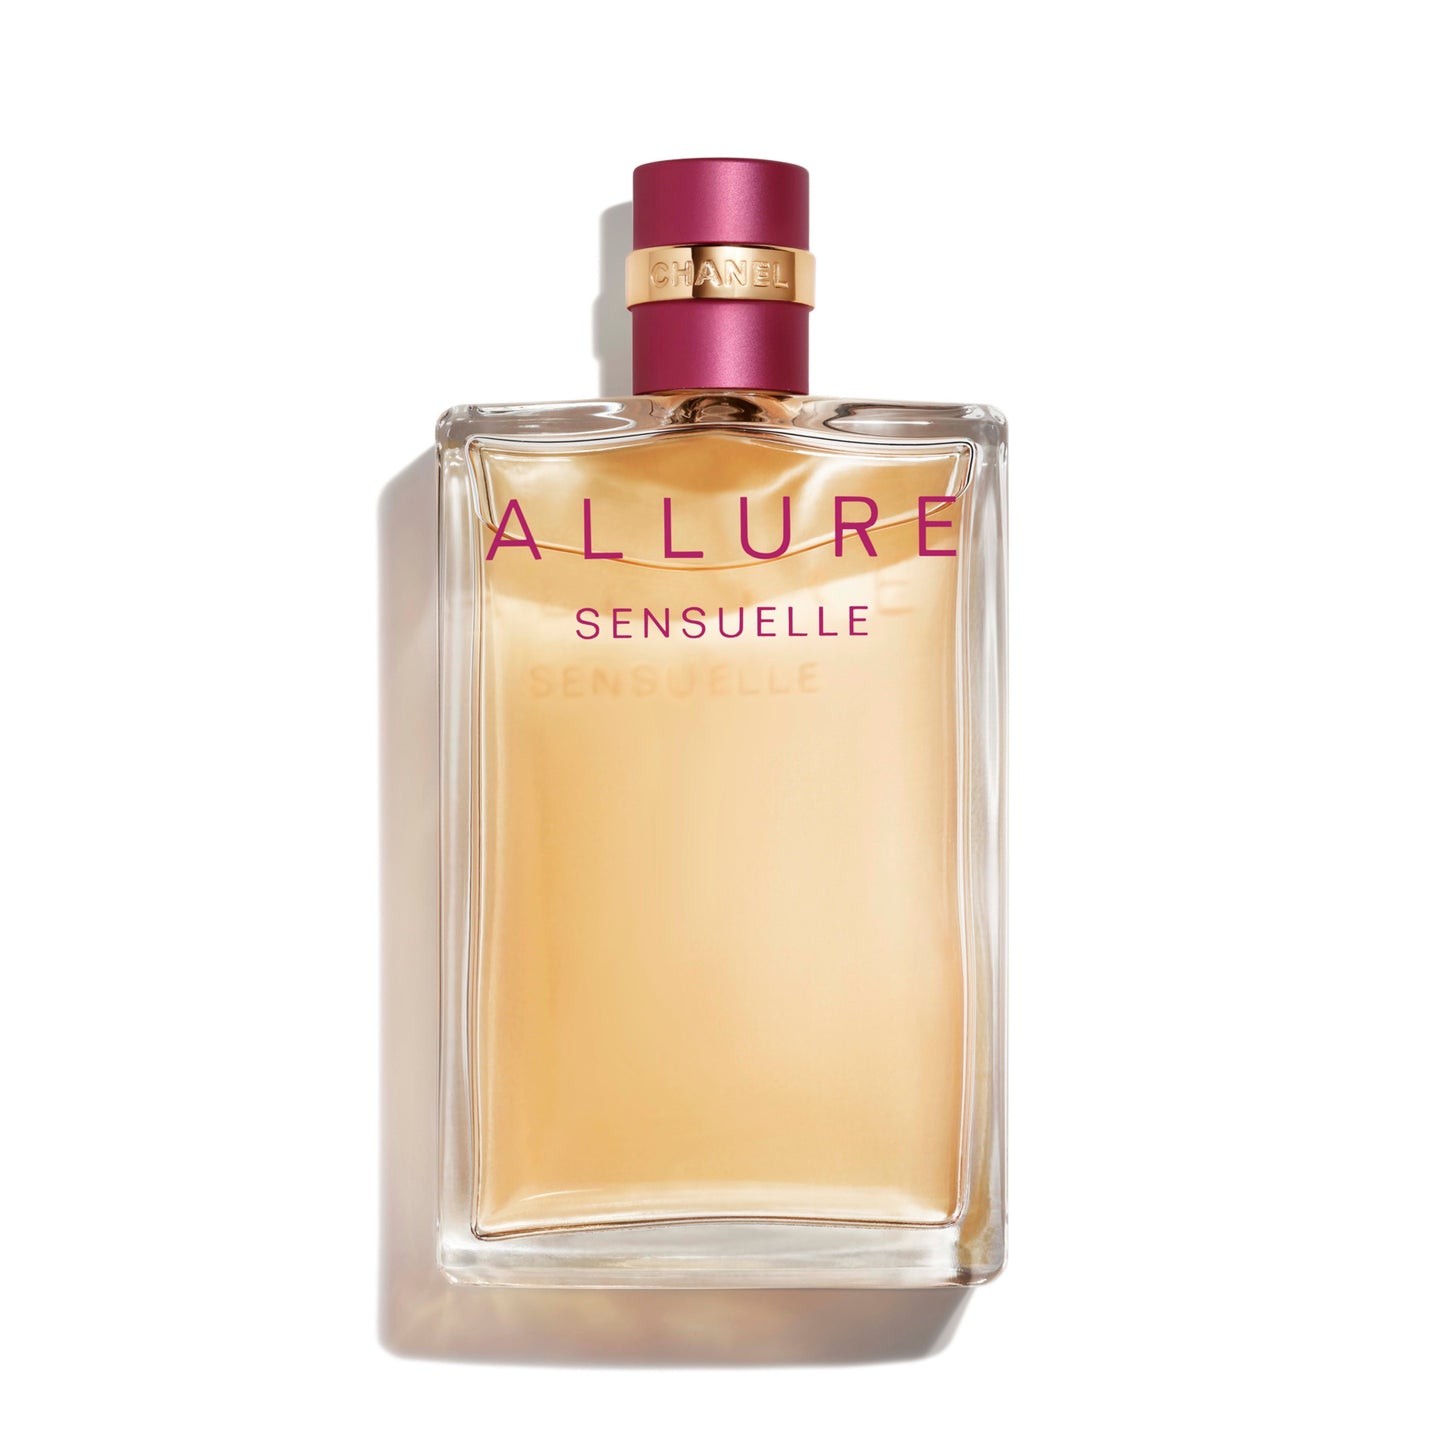 Chanel Allure Sensuelle Perfume